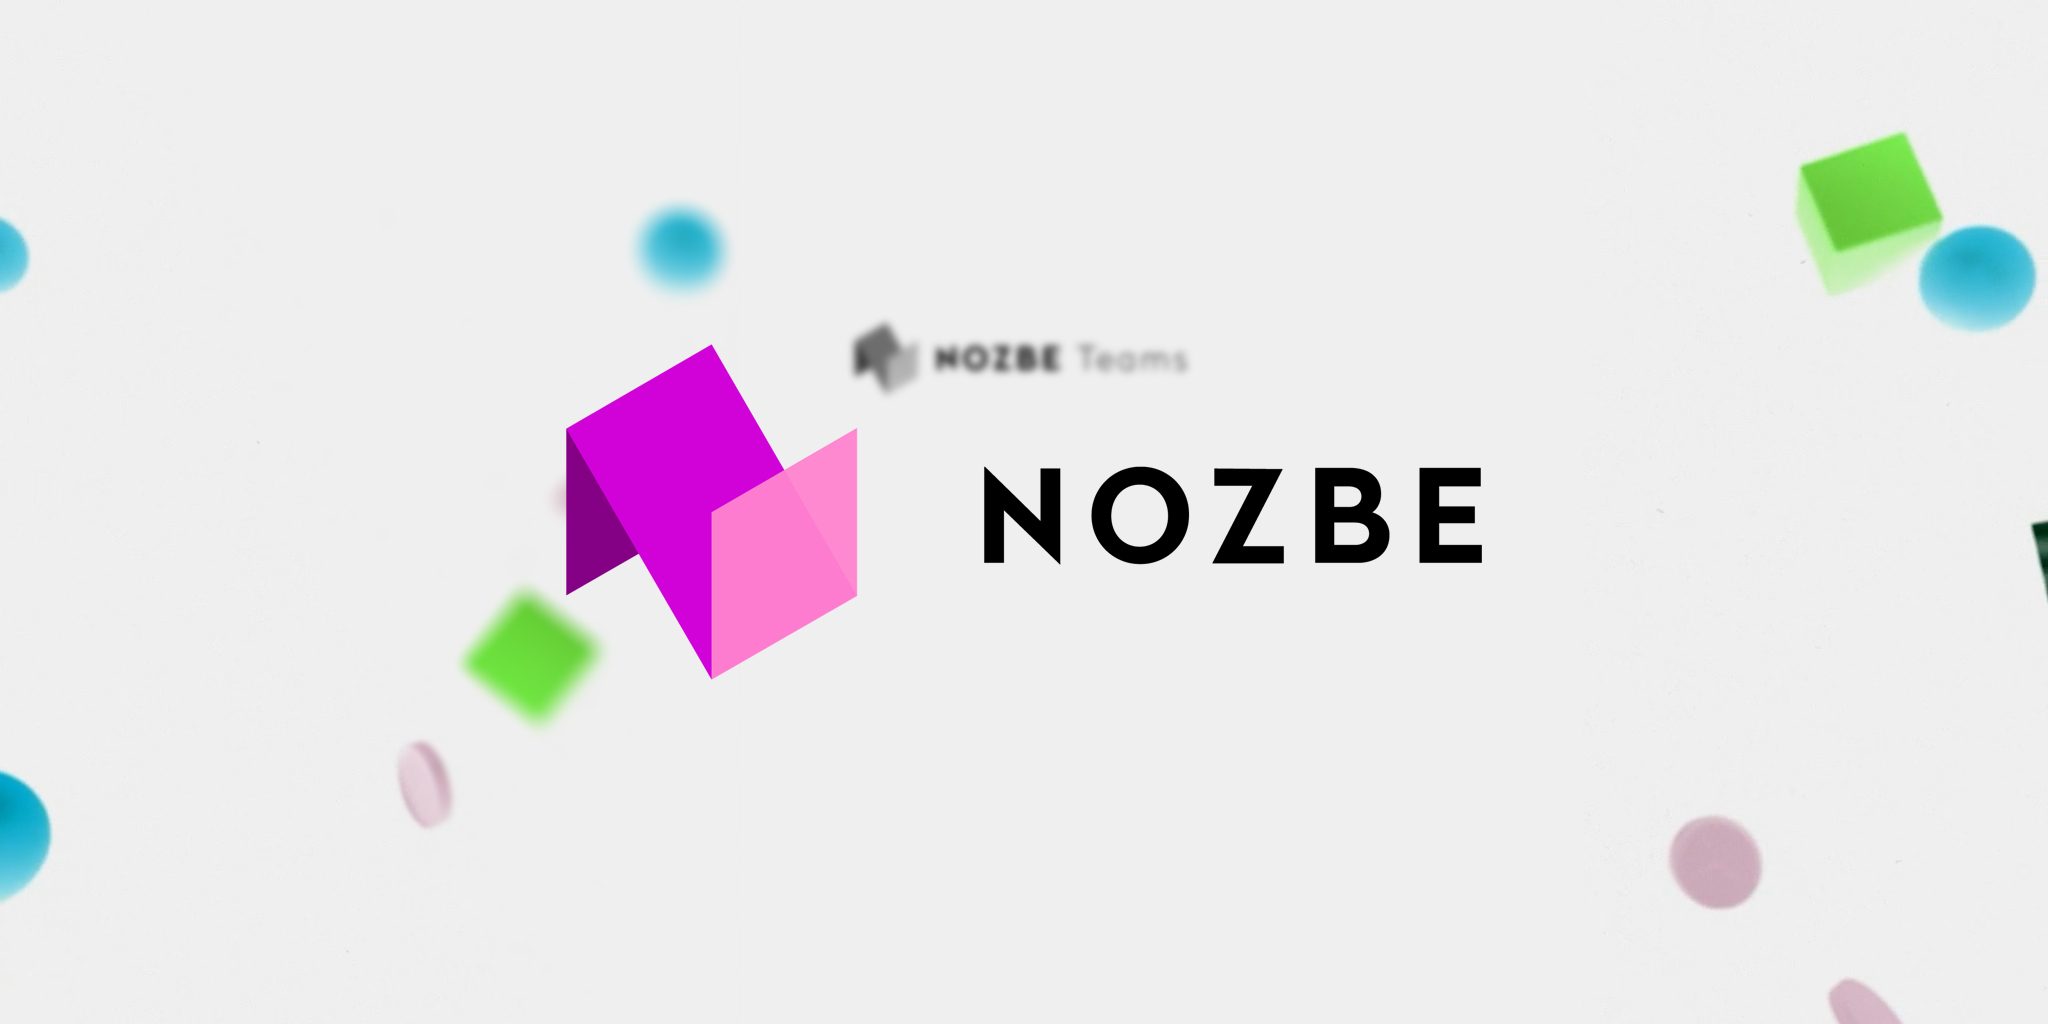 Nozbe est une nouvelle version de Nozbe